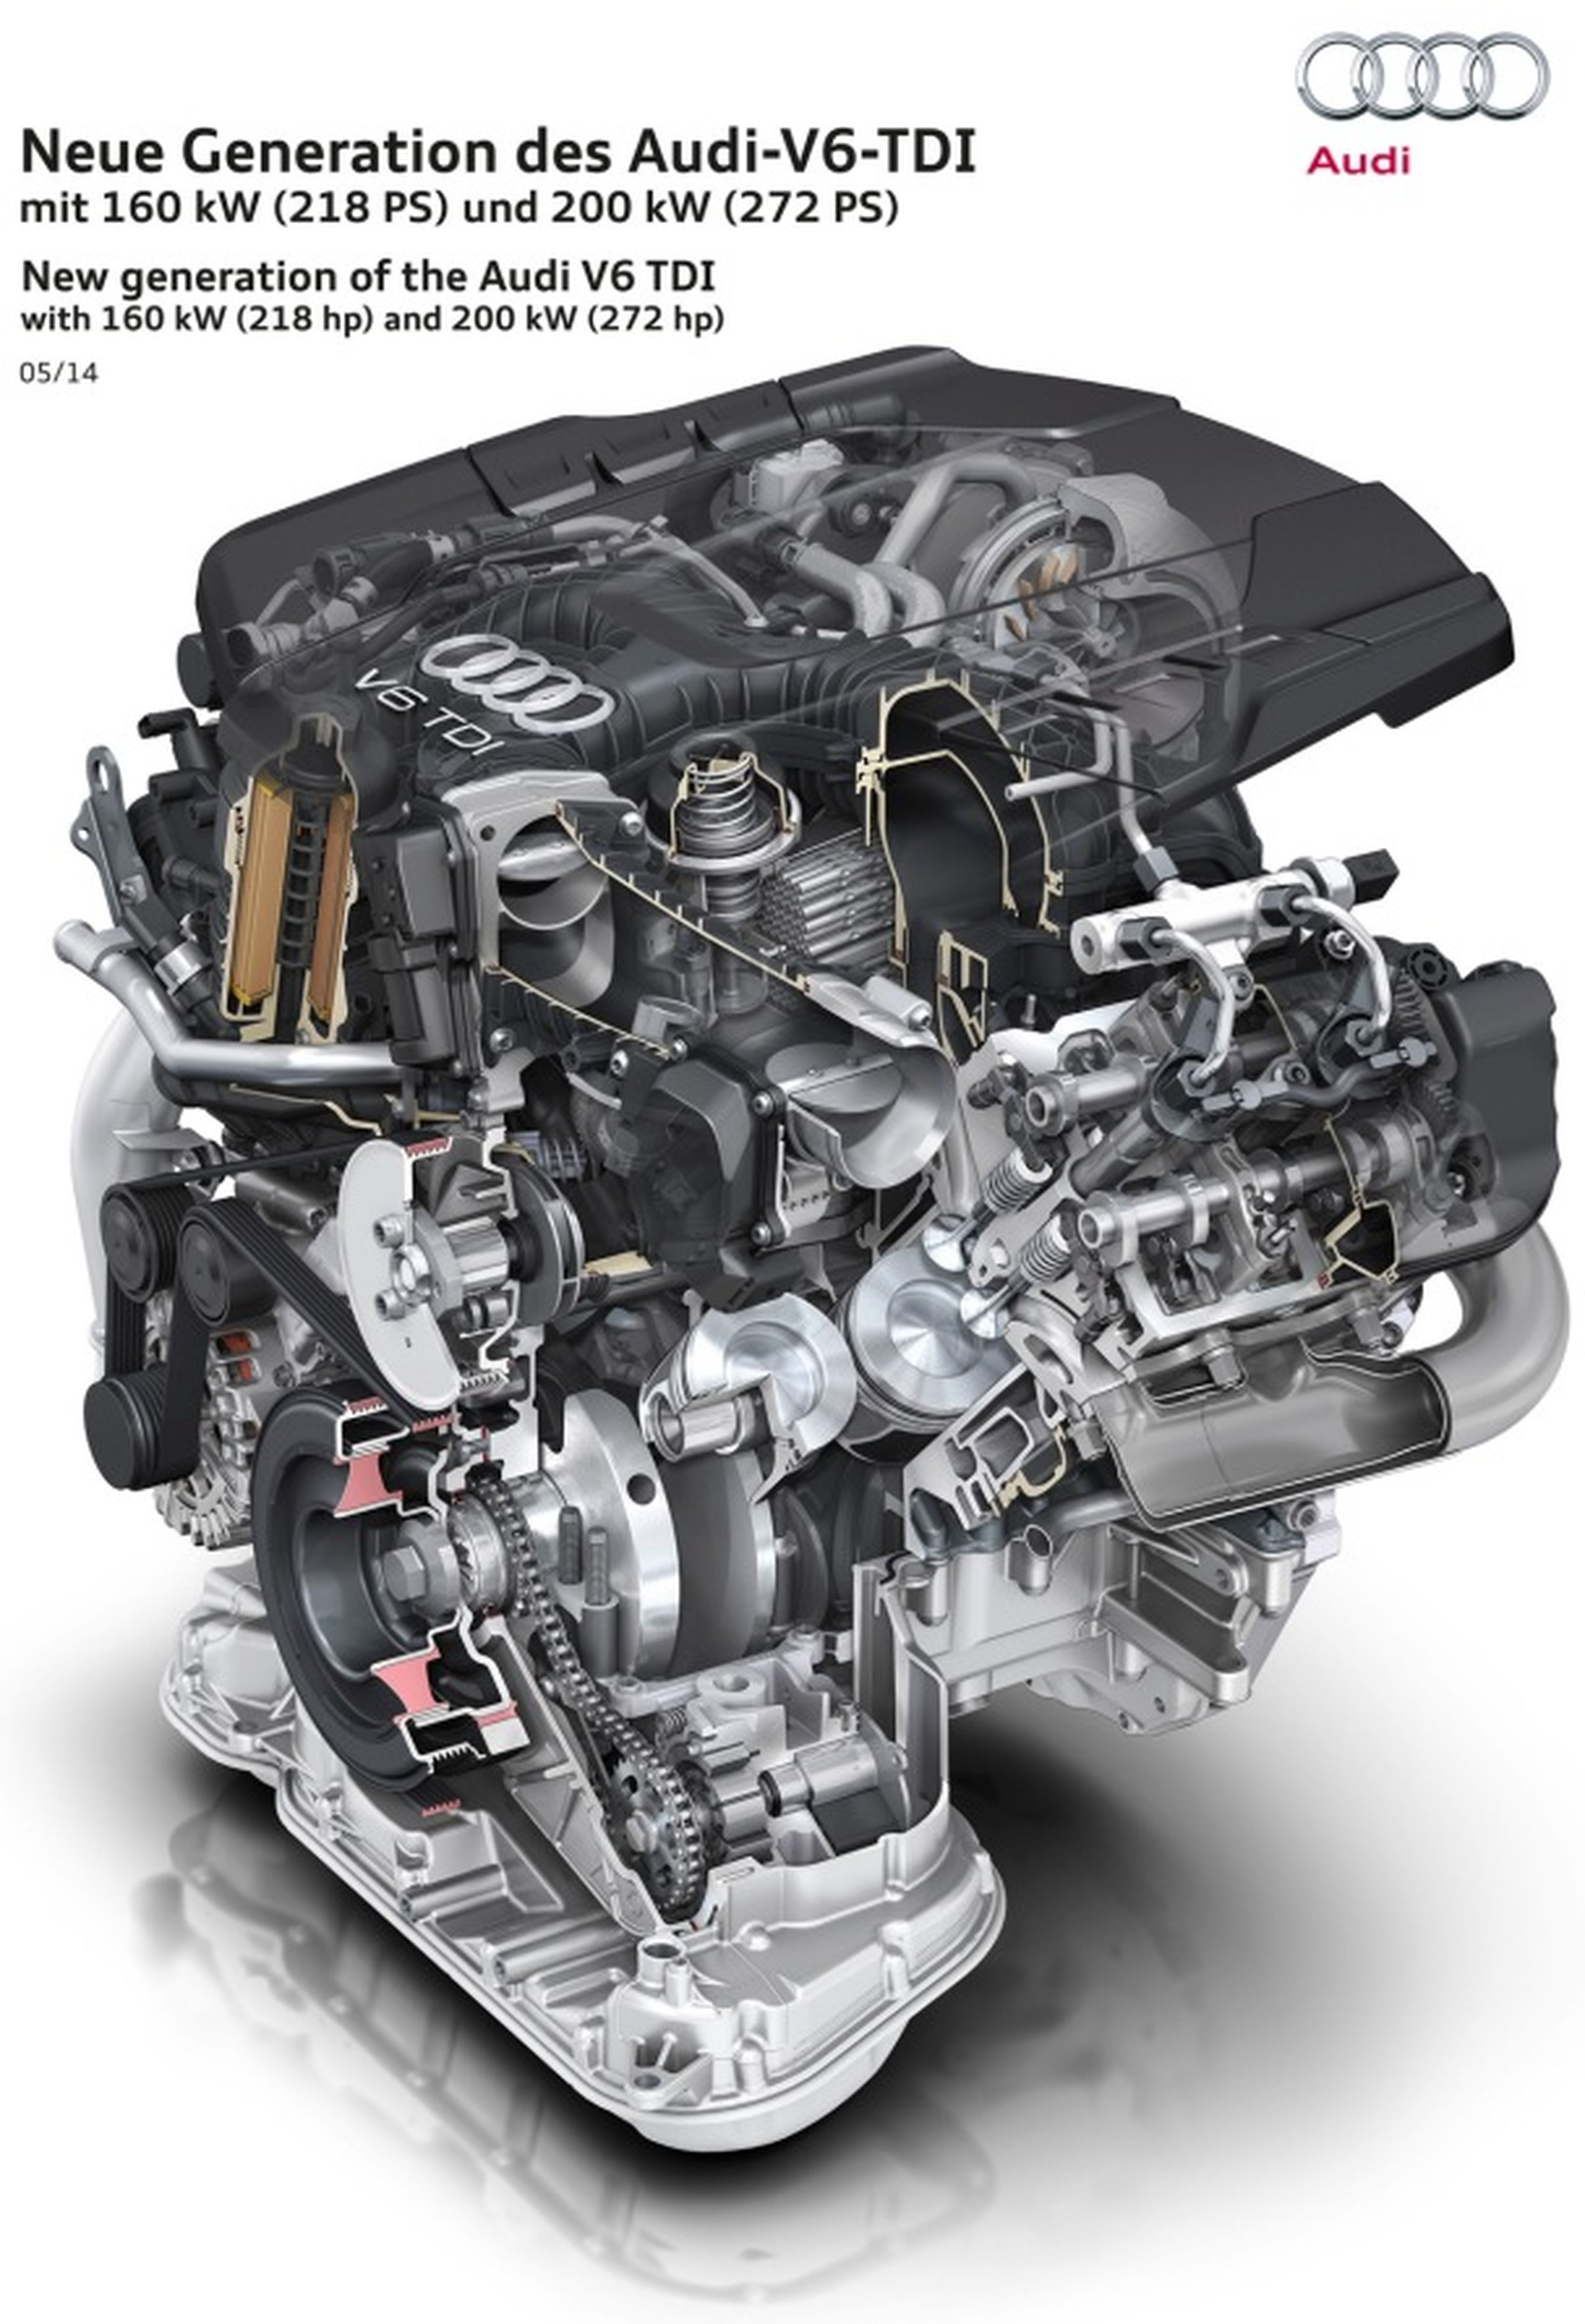 Audi presenta el nuevo motor V6 3.0 TDI